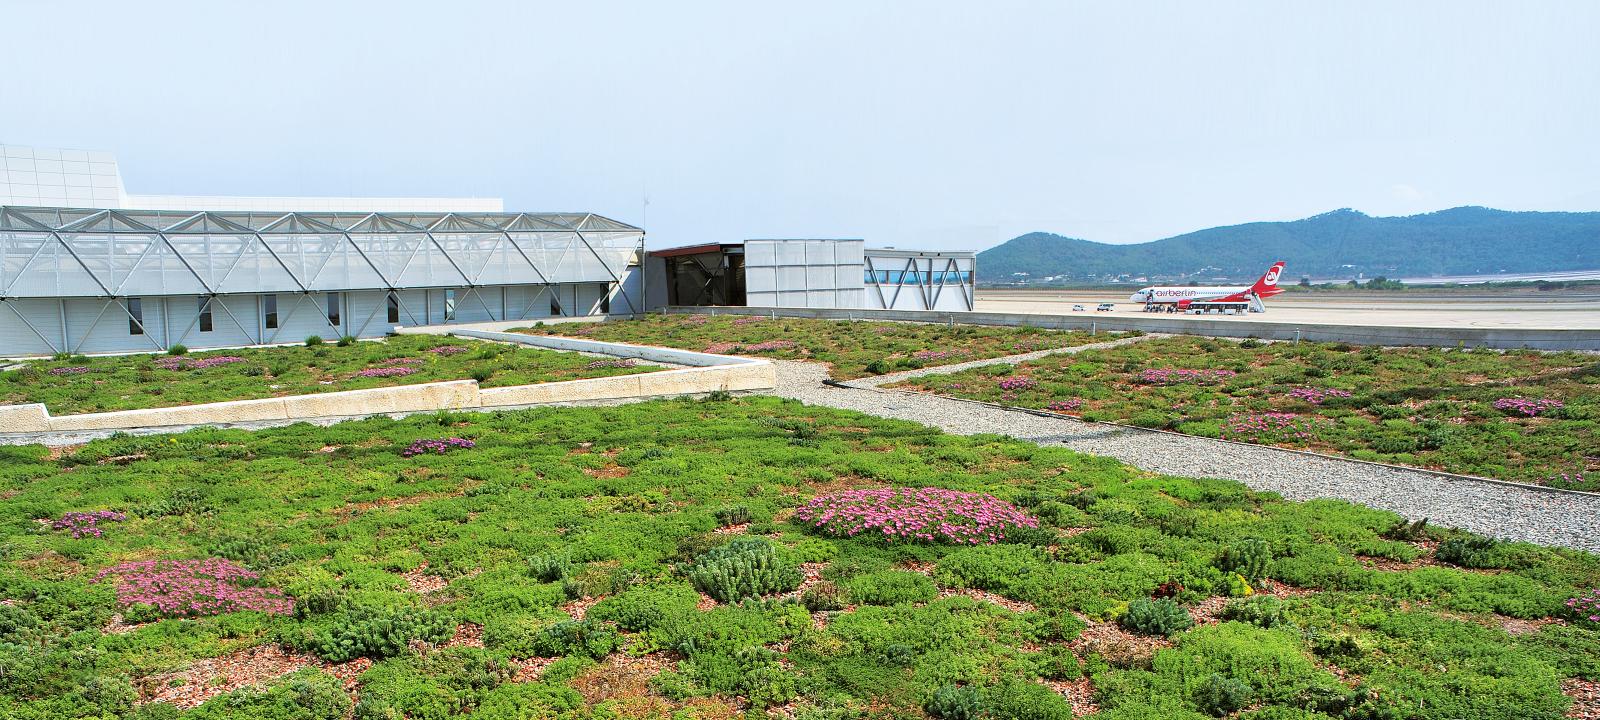 Vista parcial de la cubierta con la plantación de tipo extensiva.